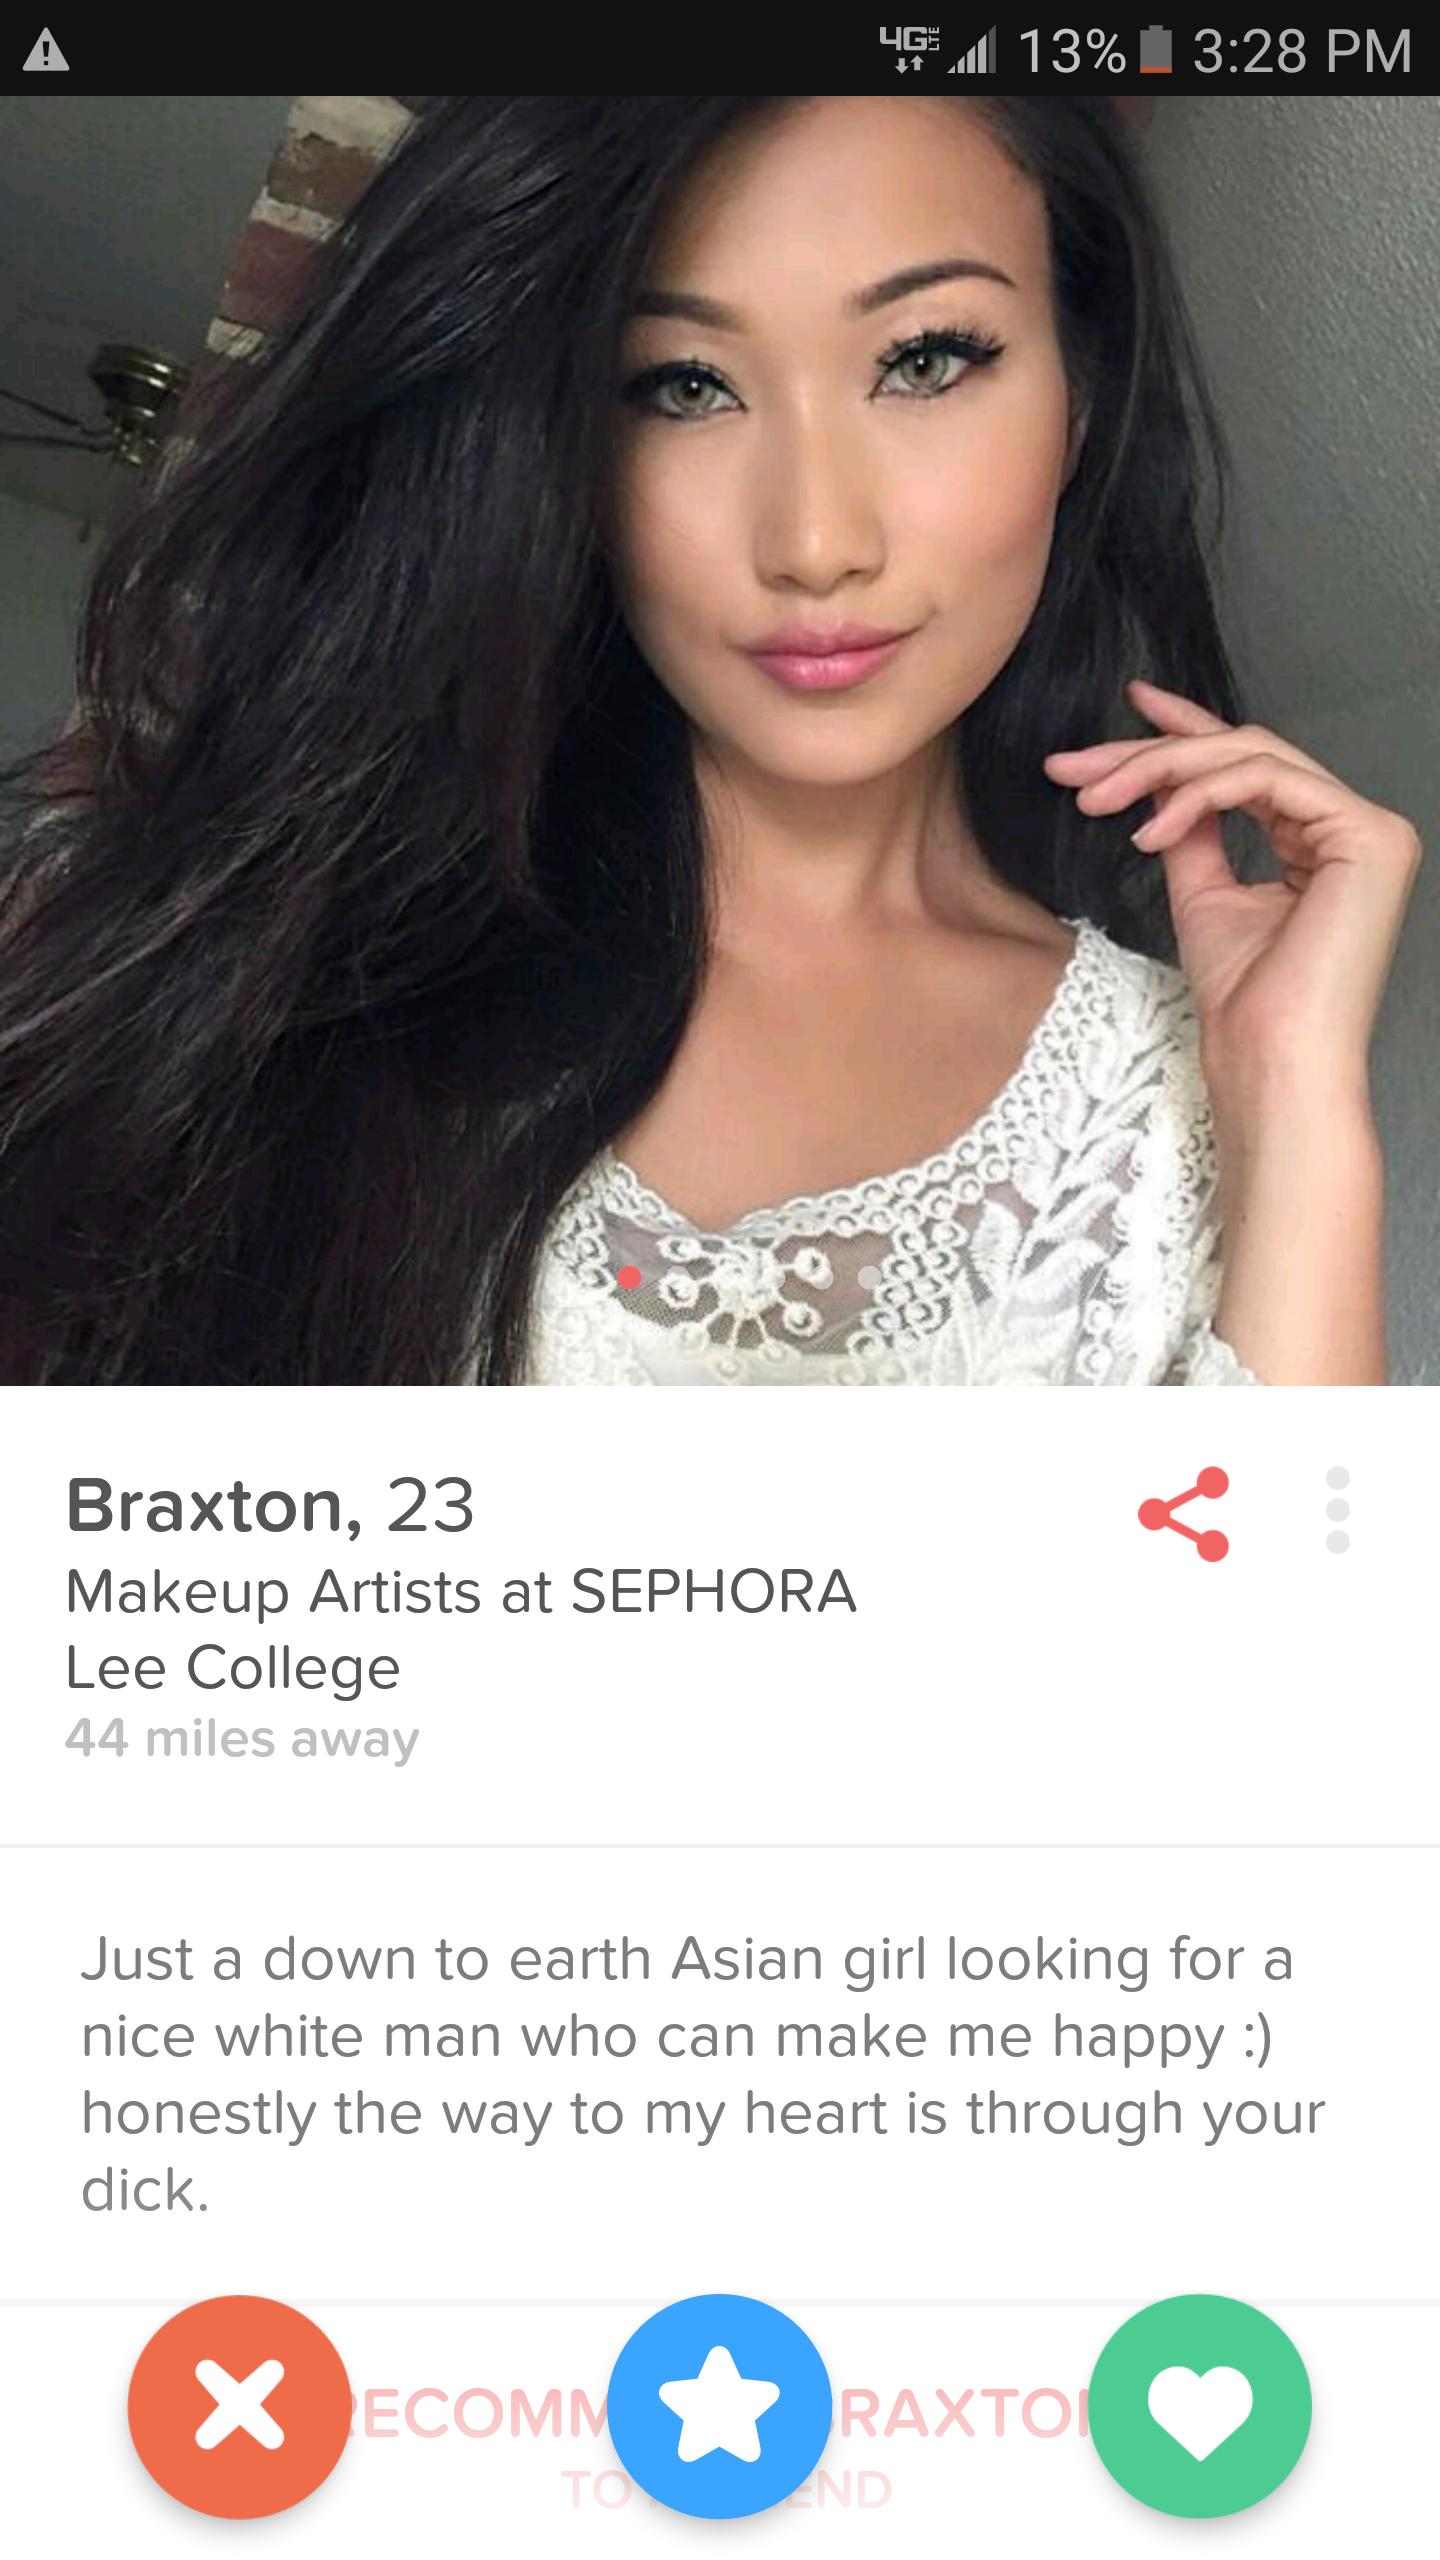 Asian tinder bios